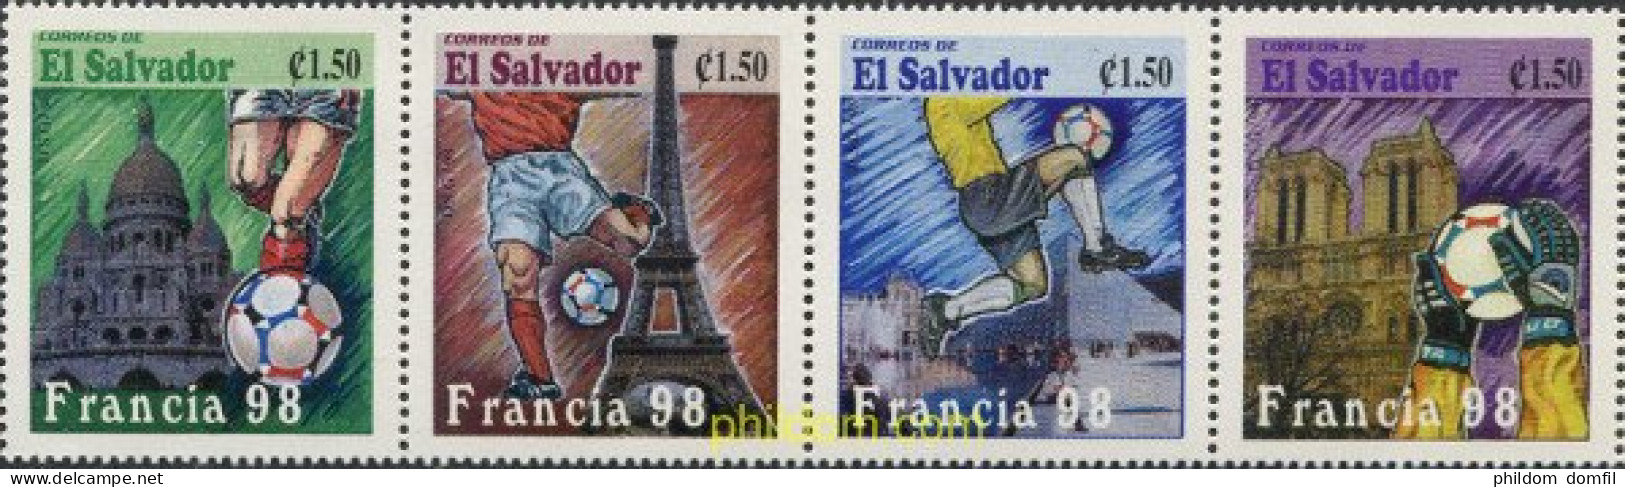 6923 MNH EL SALVADOR 1998 COPA DEL MUNDO DE FUTBOL. FRANCIA-98 - El Salvador